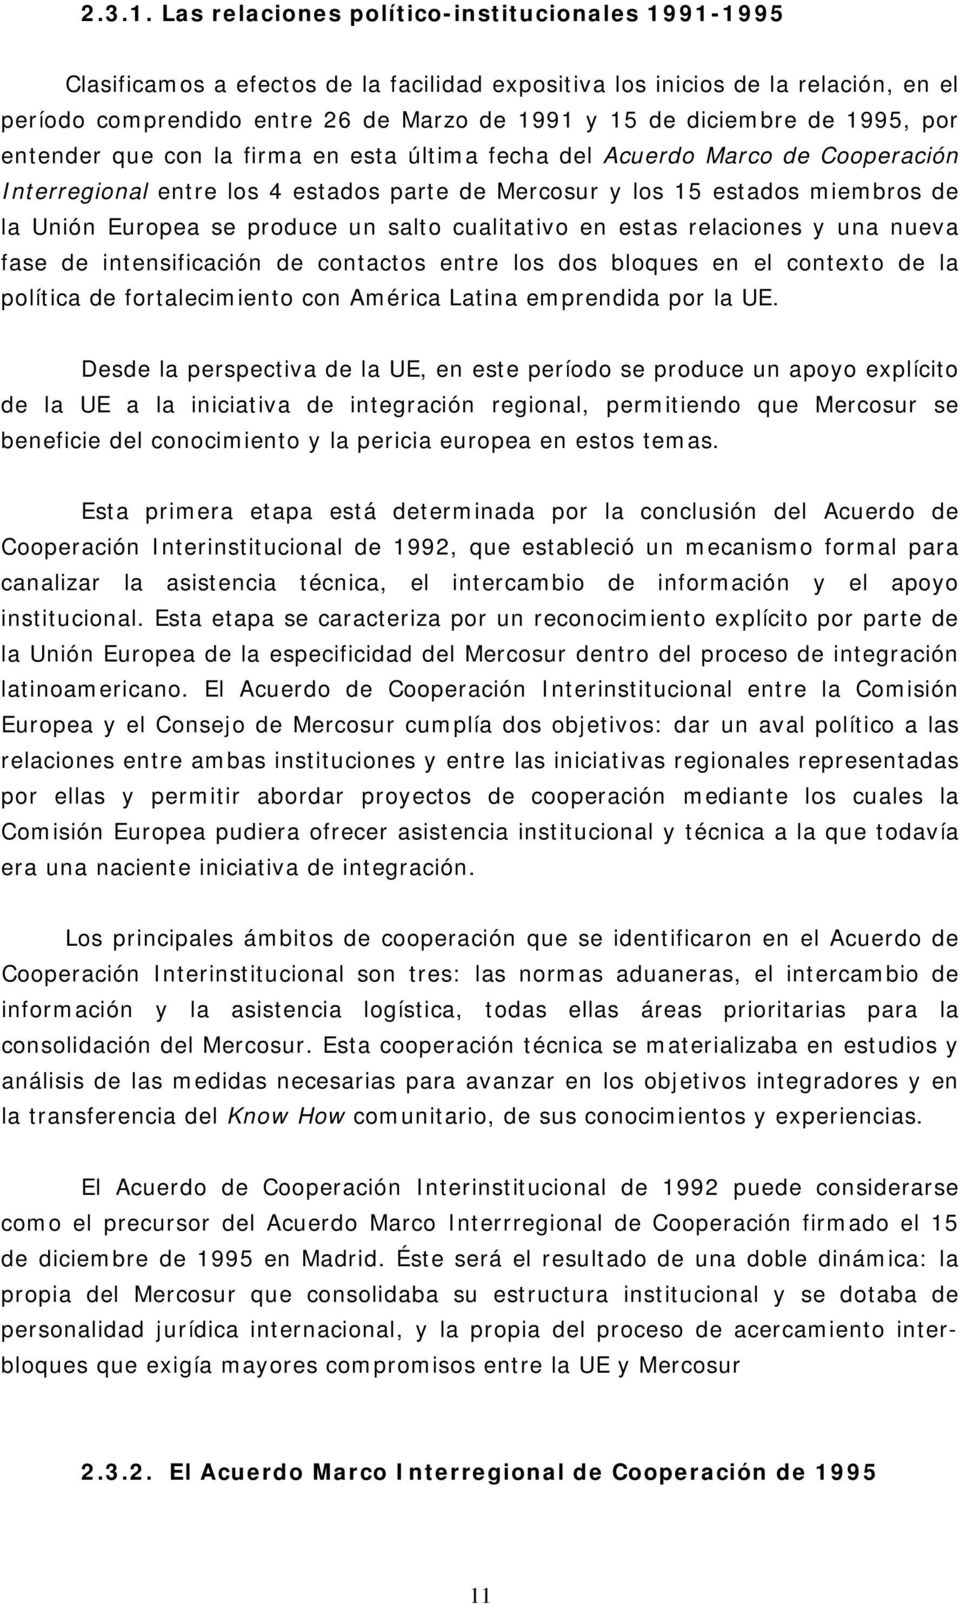 de 1995, por entender que con la firma en esta última fecha del Acuerdo Marco de Cooperación Interregional entre los 4 estados parte de Mercosur y los 15 estados miembros de la Unión Europea se